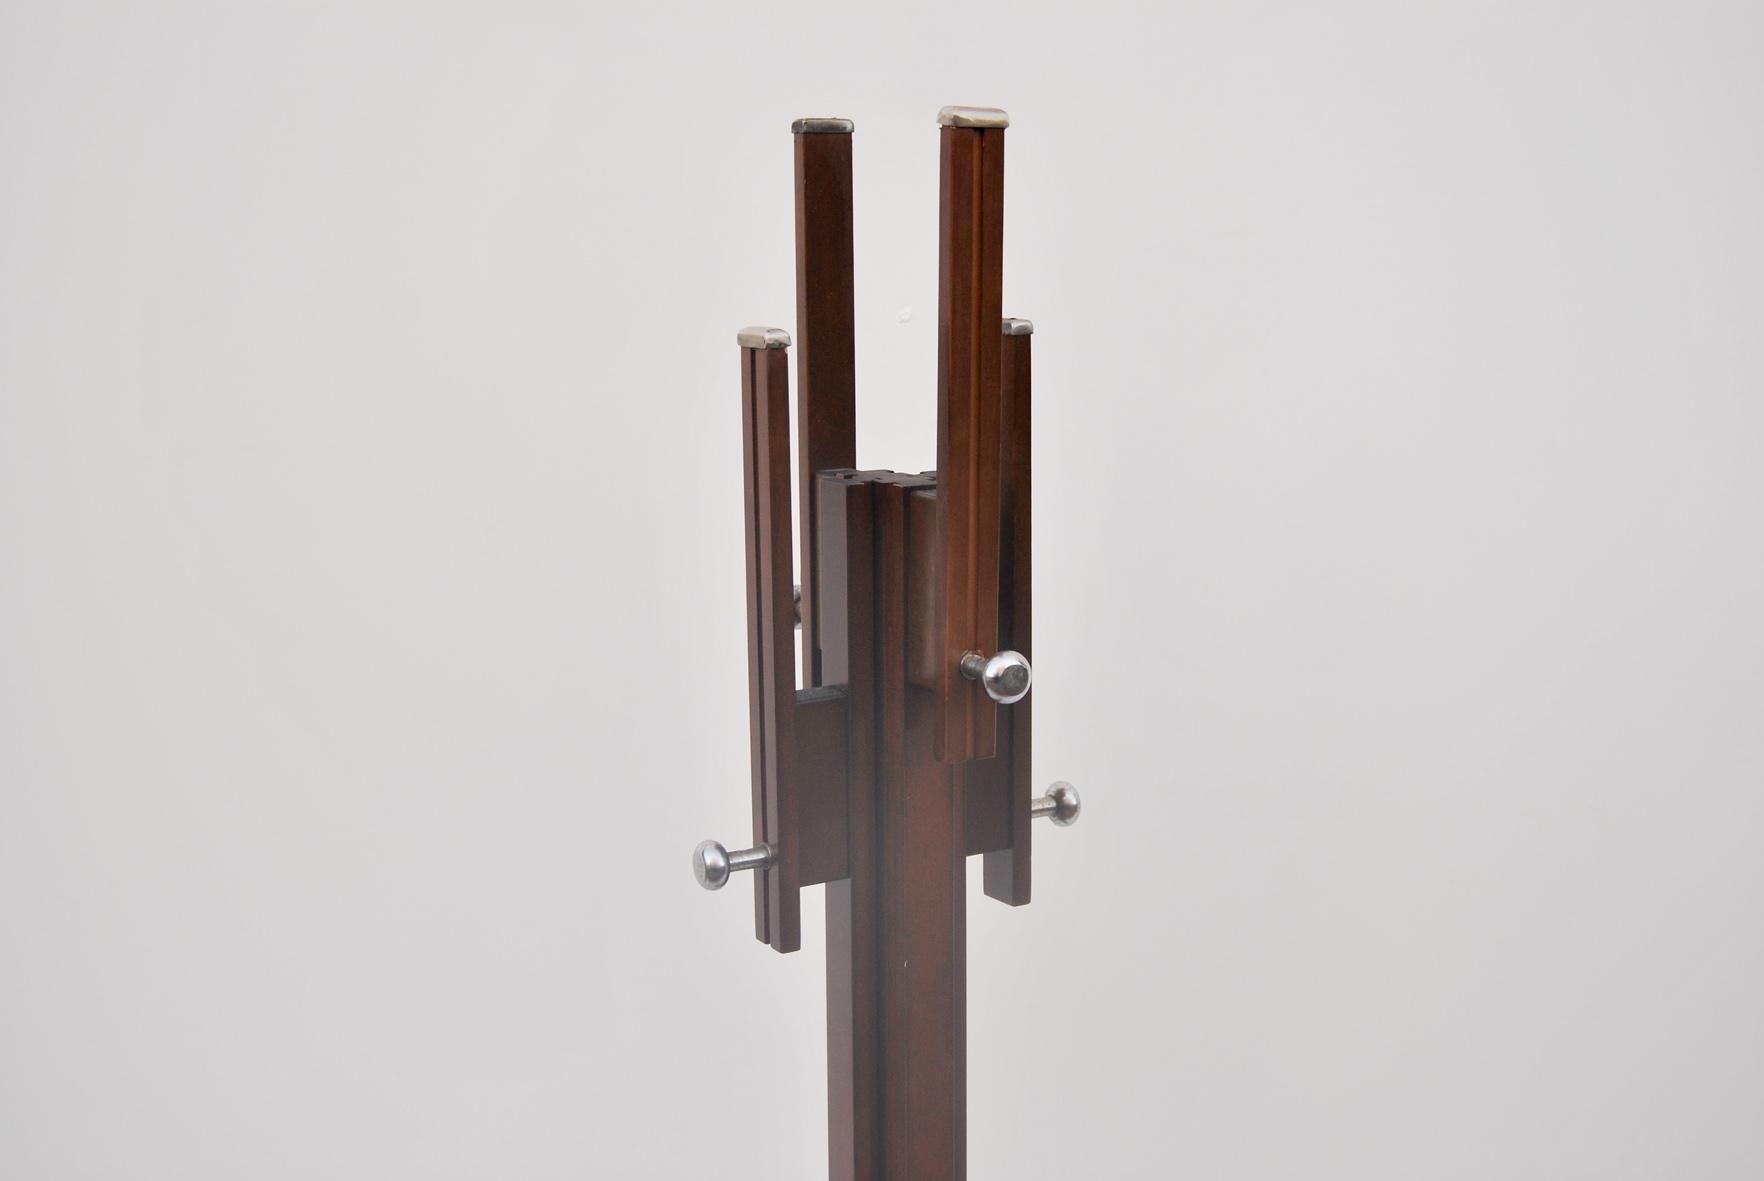 Porte-manteau conçu par Carlo De Carli pour Fiam, années 1960. 
Le cadre est en bois avec des garnitures en acier chromé. 
L'état est parfait, quelques légères traces d'utilisation dues au temps.  
Le prix de l'expédition est pour le territoire